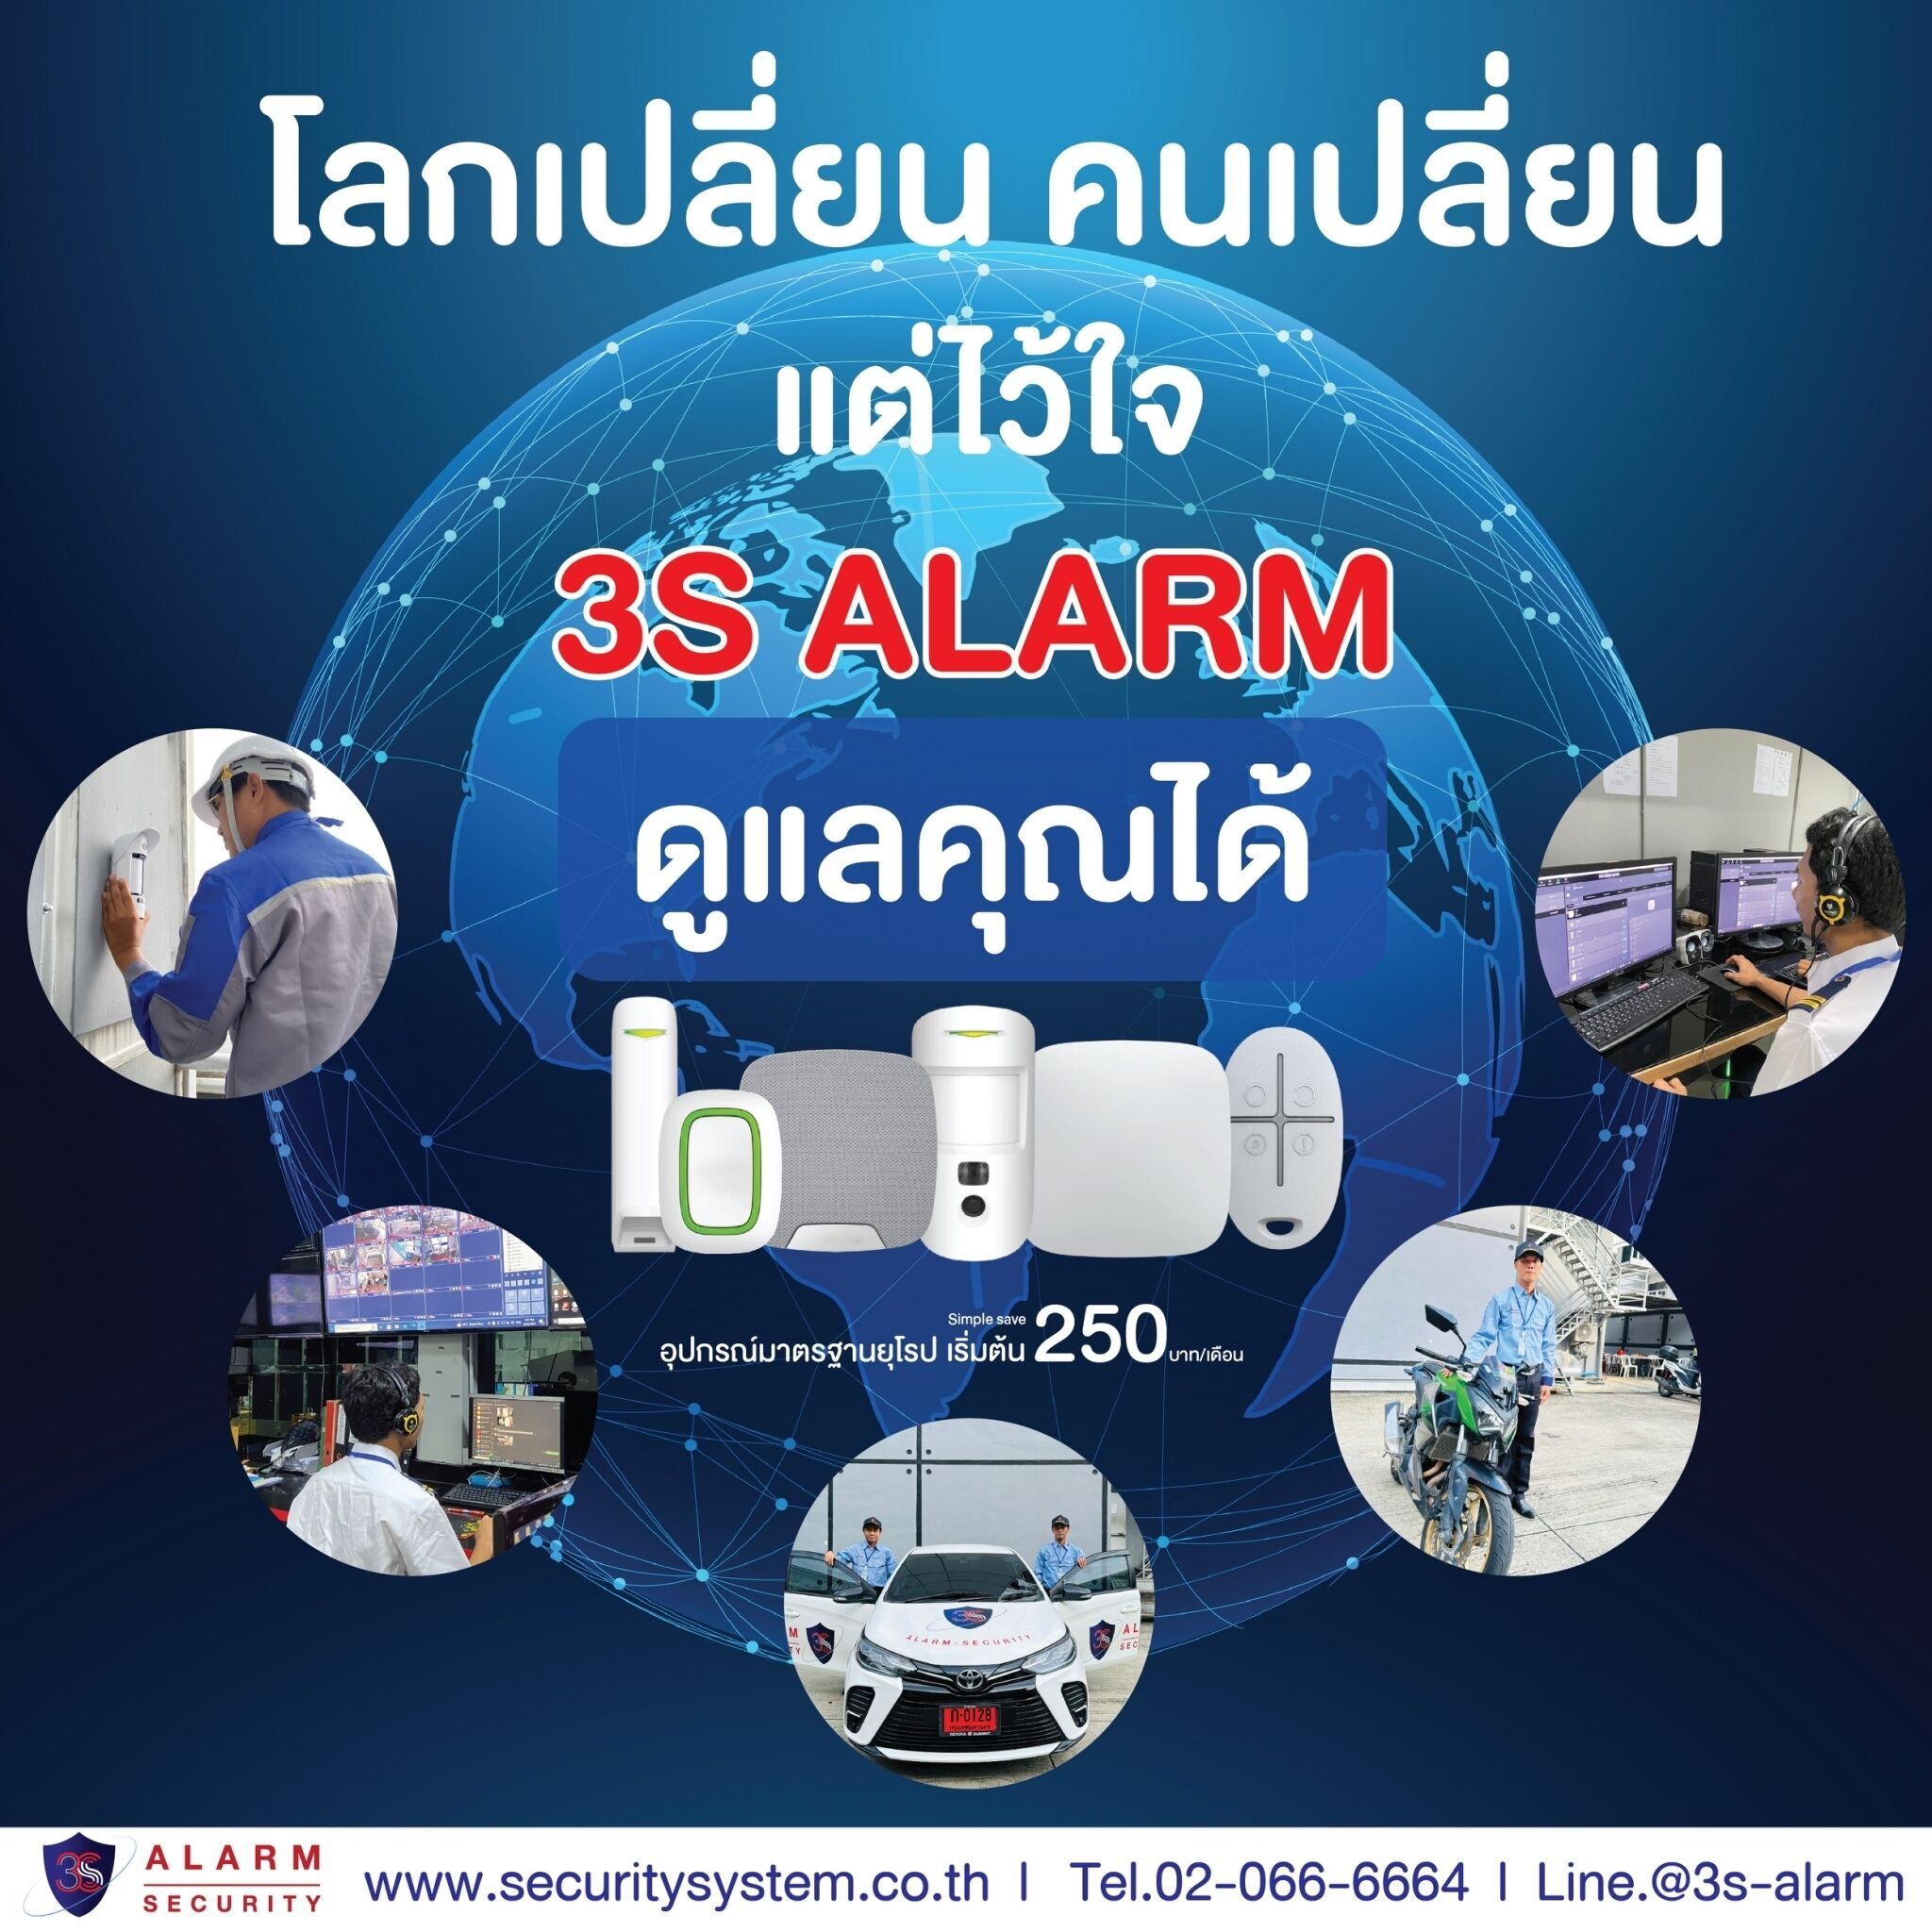 3S ALARM ระบบรักษาความปลอดภัย Security System